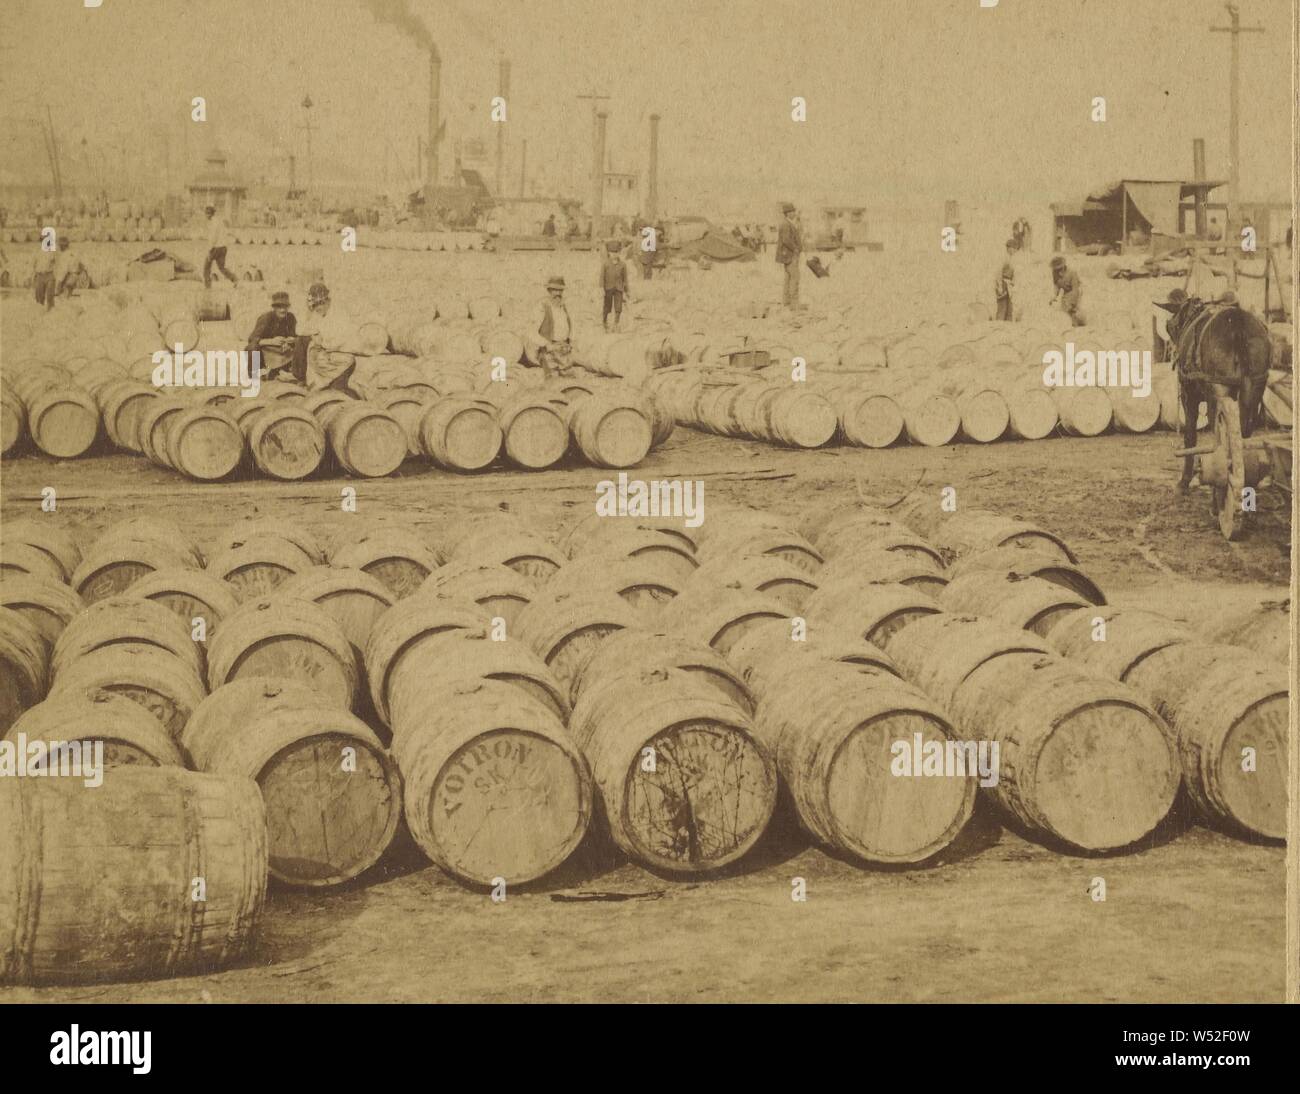 Der schönste Ort auf Erden - Zucker Deich, New Orleans, Louisiana, USA, Strohmeyer & Wyman, 1893, Eiweiß silber Drucken Stockfoto